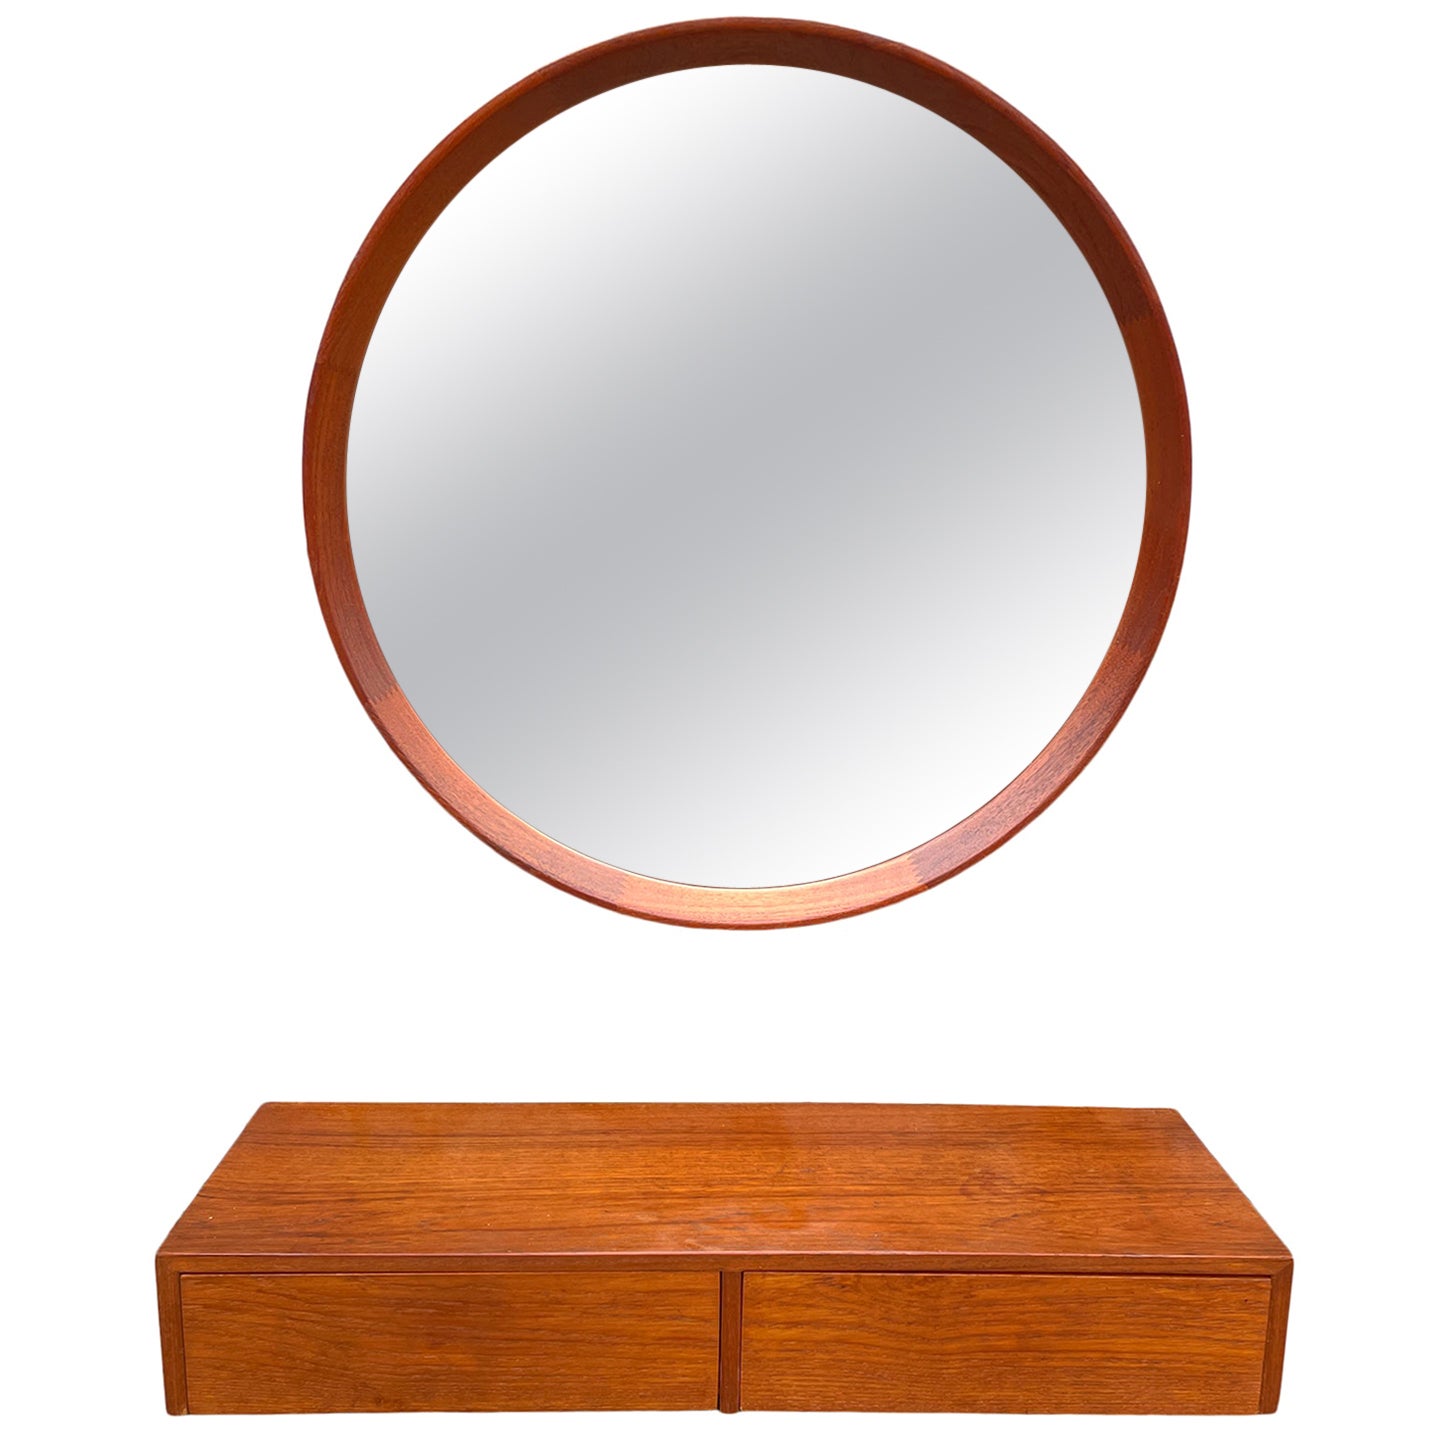 Mid-Century Modern Danish Modern Teak Round Mirror with 2 Drawer Vanity